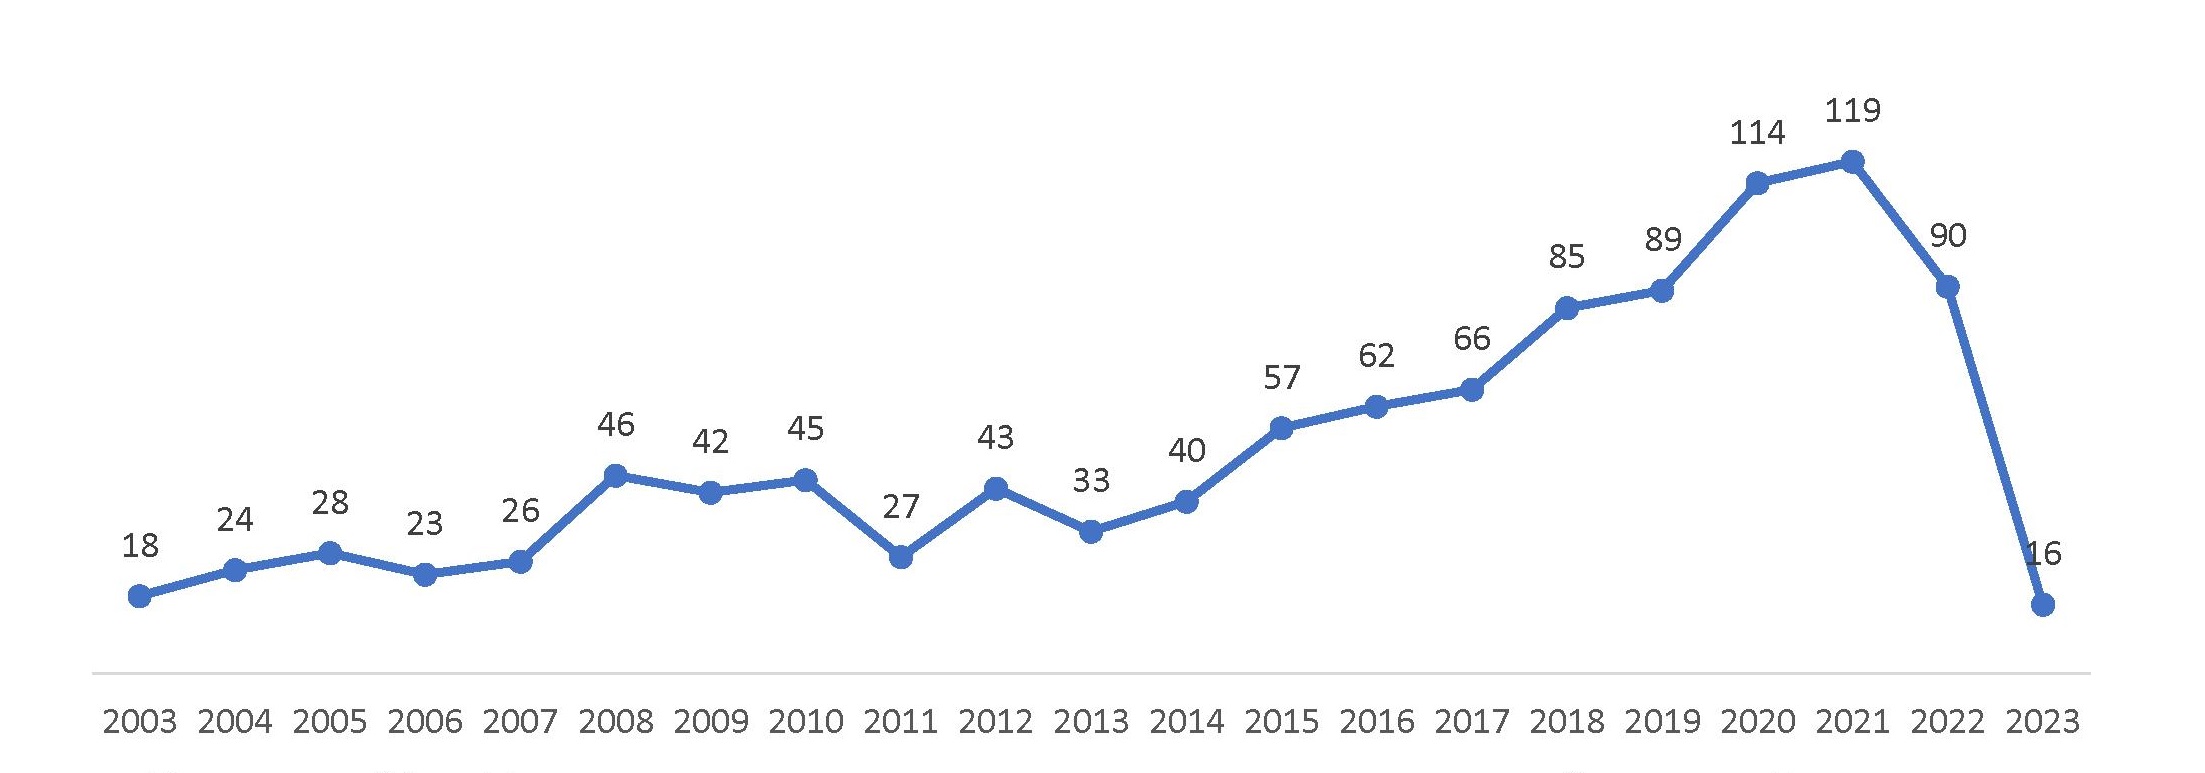 Рисунок 20 – Распределение количества непатентных публикаций по годам в период с 2003 г. по 01.10.2023 г